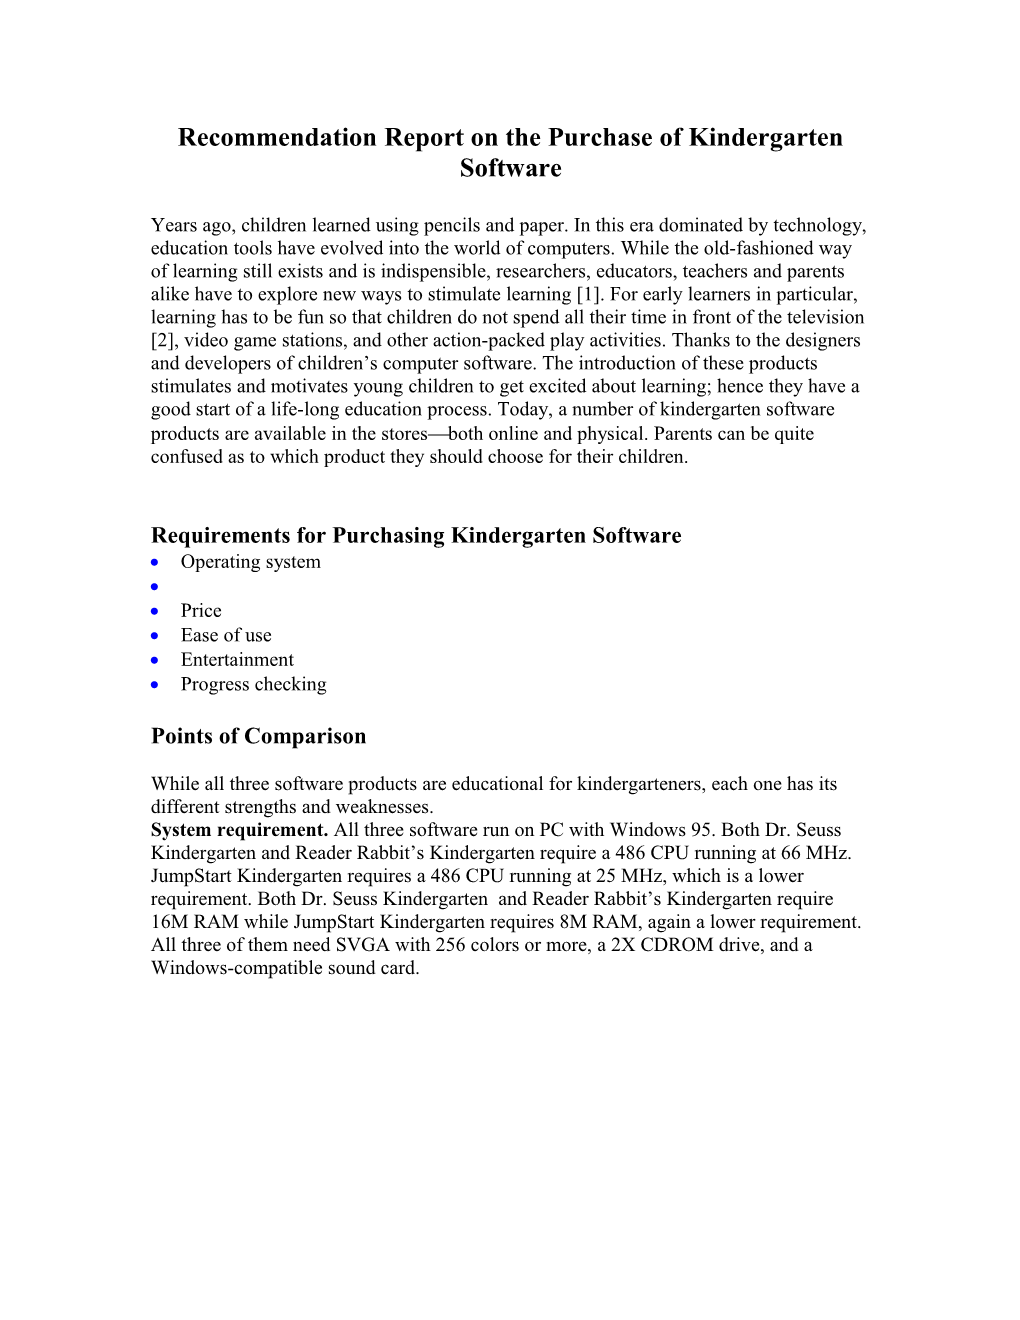 Recommendation Report: Kindergarten Software